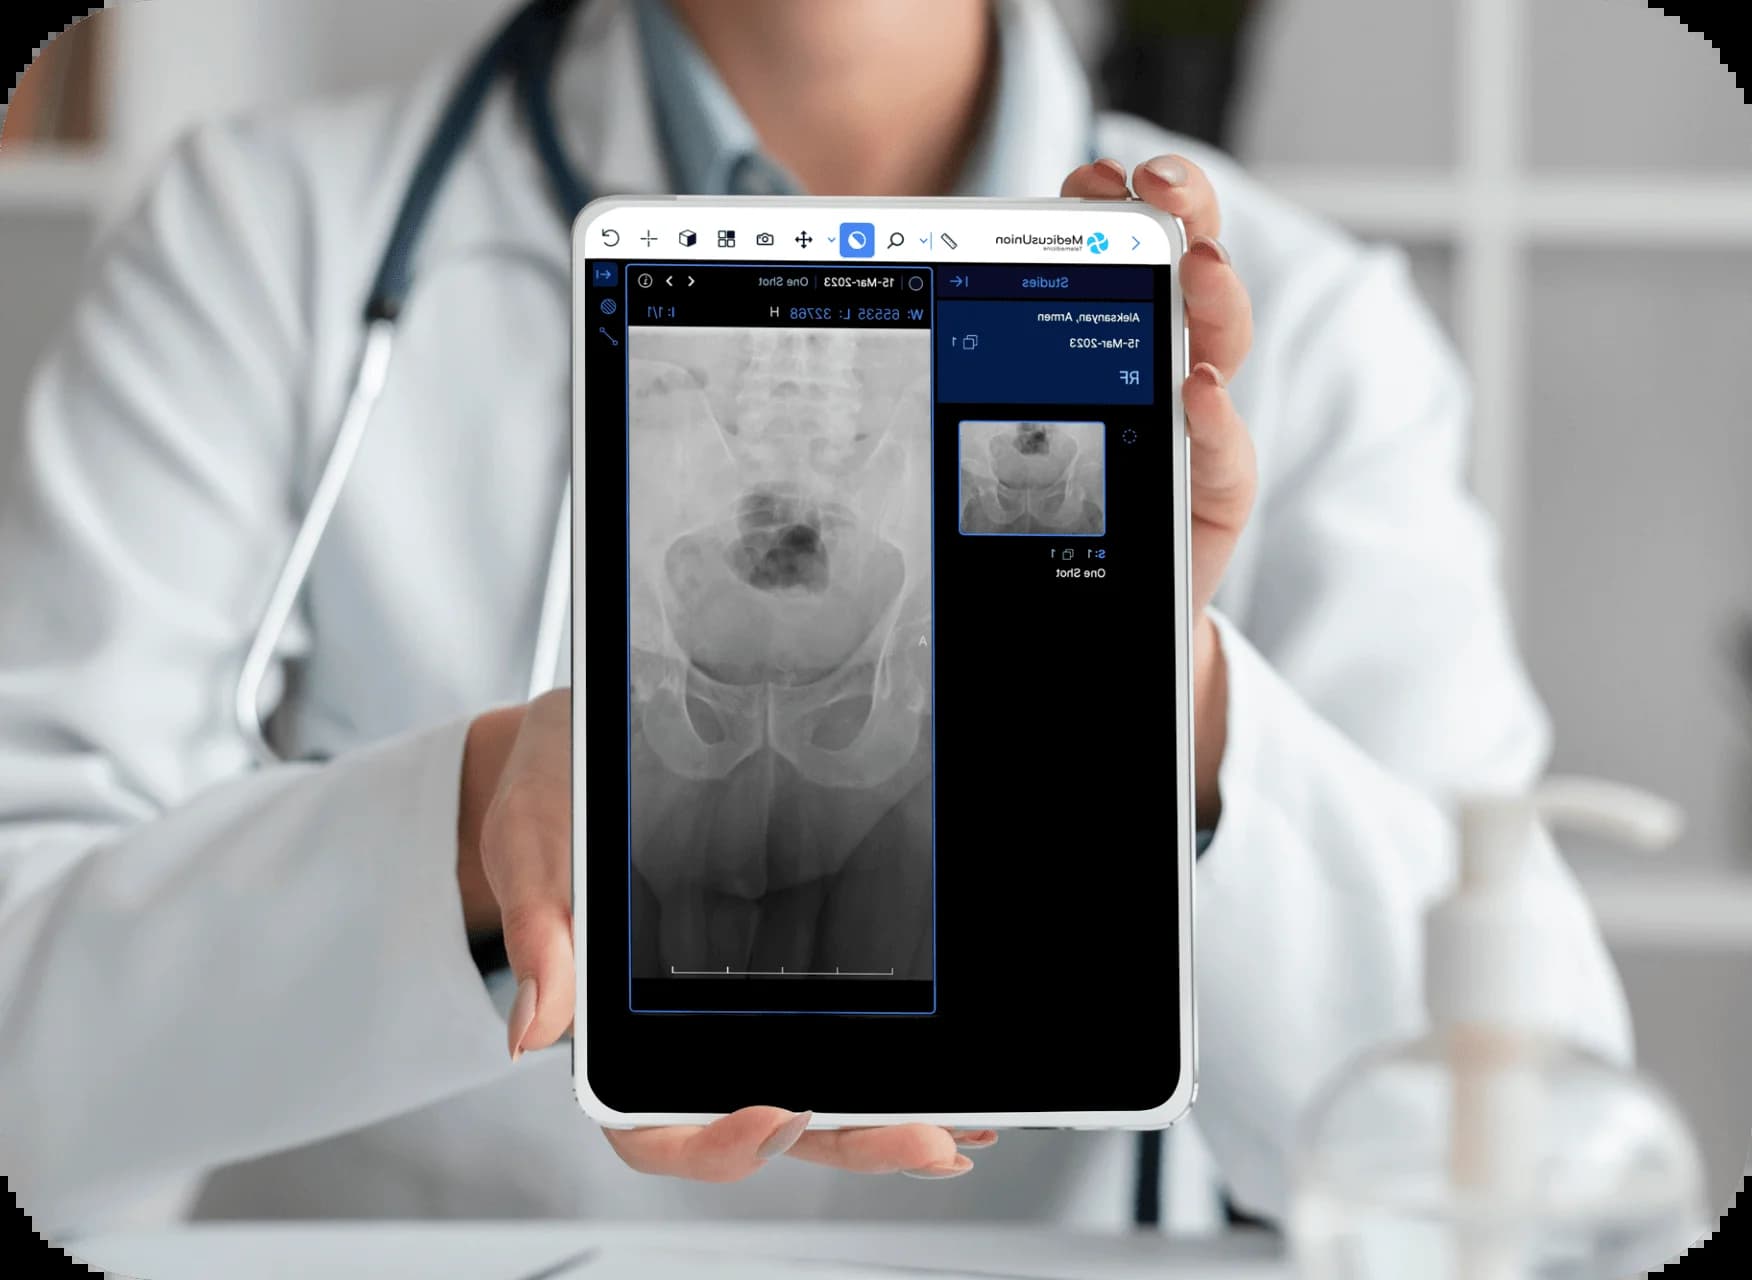 Сканирование таза, отображаемое на планшете врача, дает ценную информацию медицинским работникам.